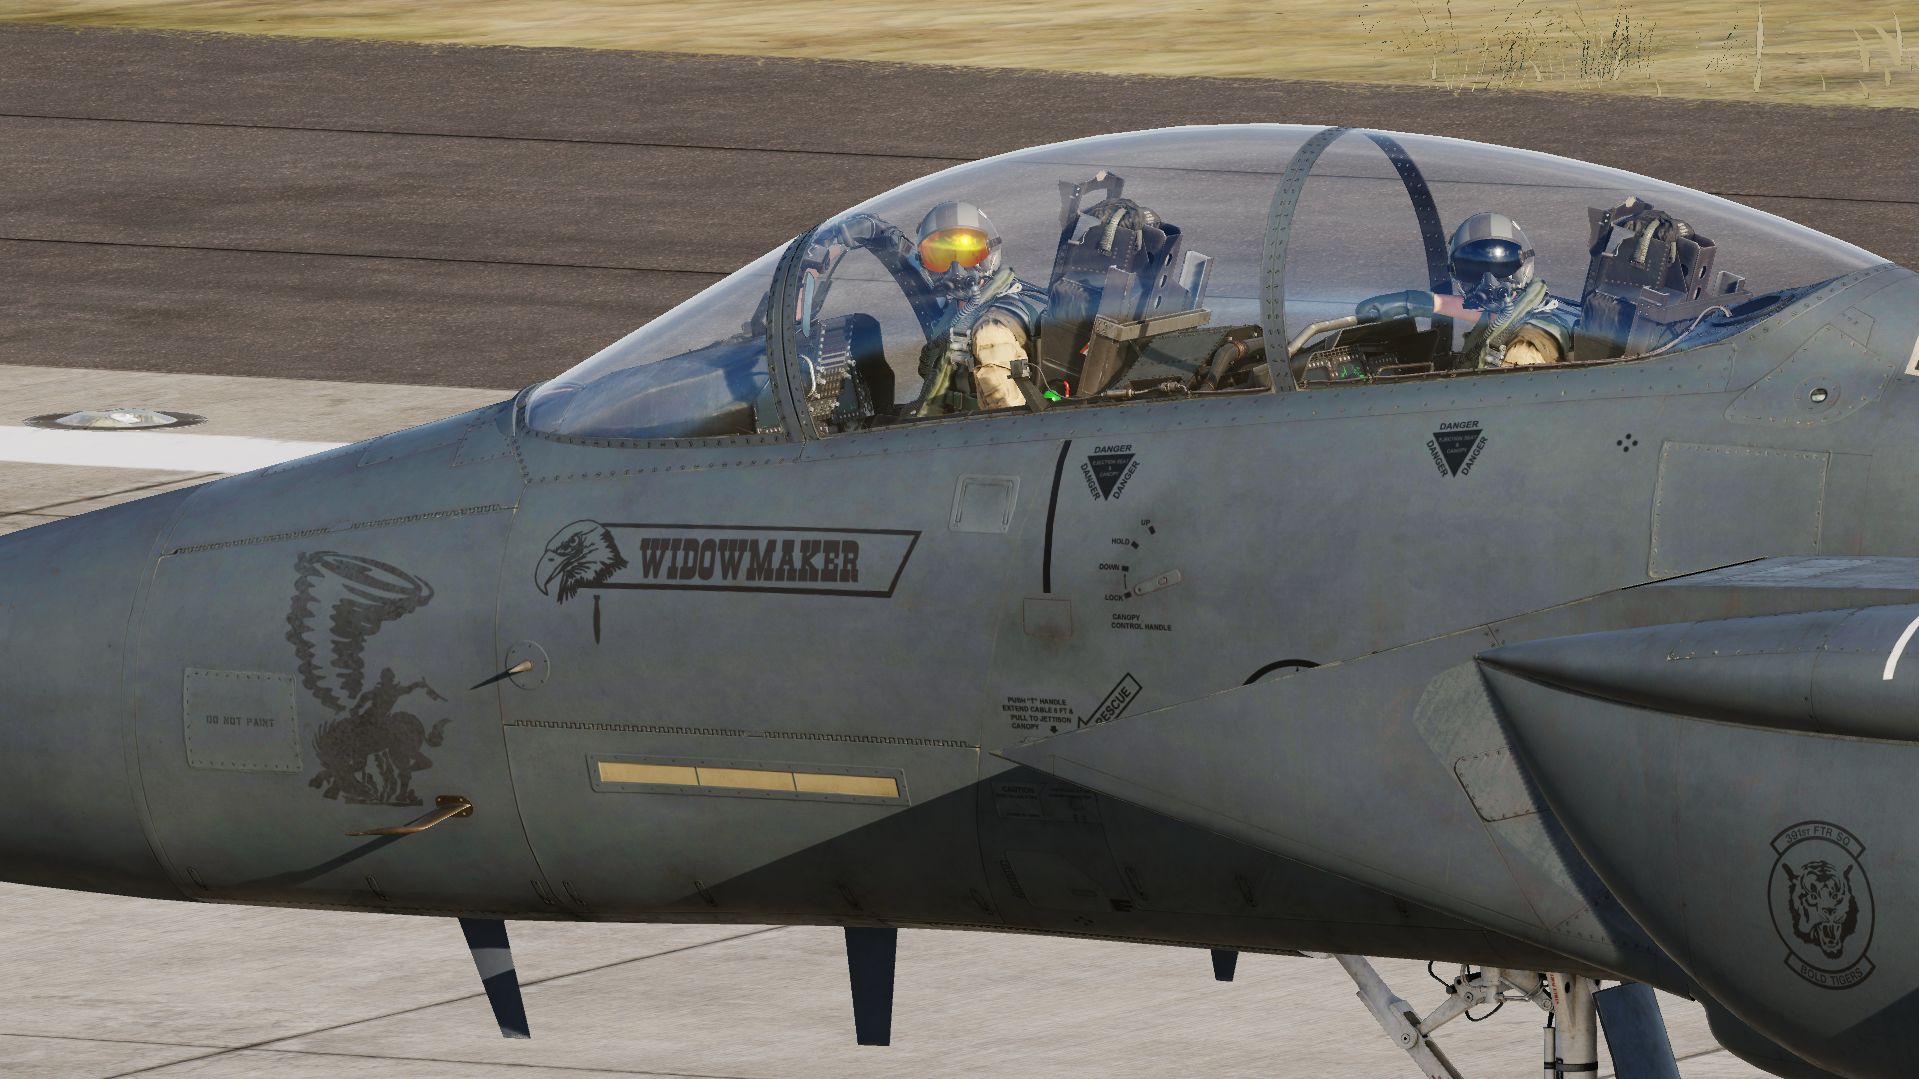 F-15E Strike eagle Mo 90-259 "Widowmaker"